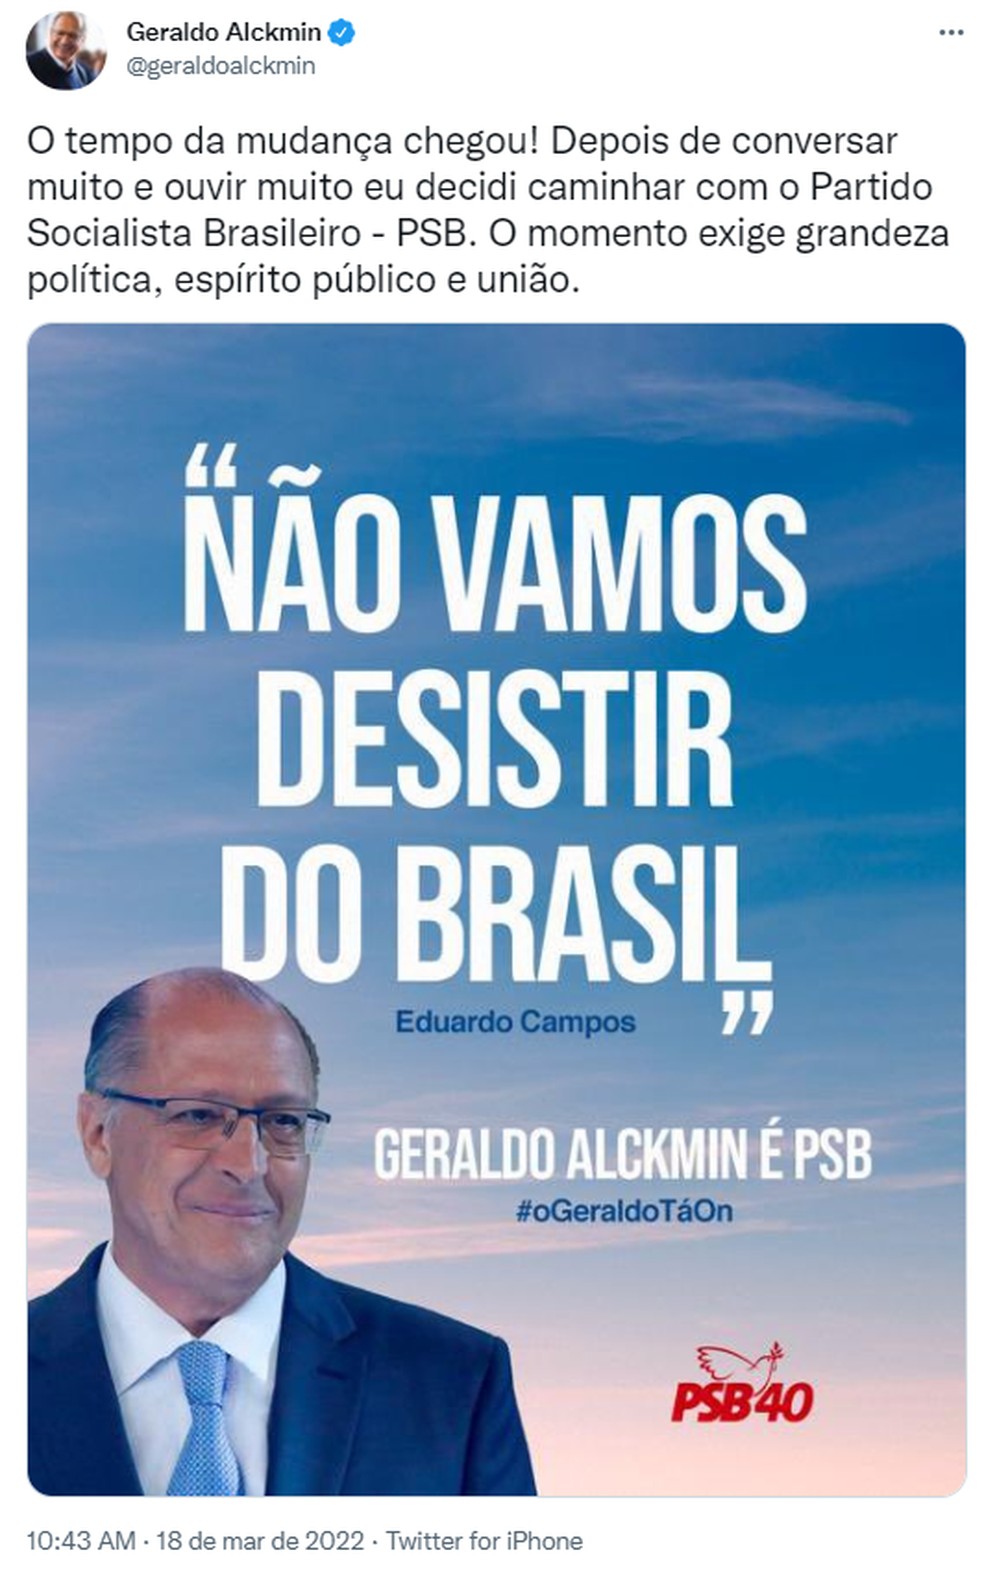 Alckmin confirma filiação ao PSB e cita Eduardo Campos | Eleições 2022 em São Paulo | G1